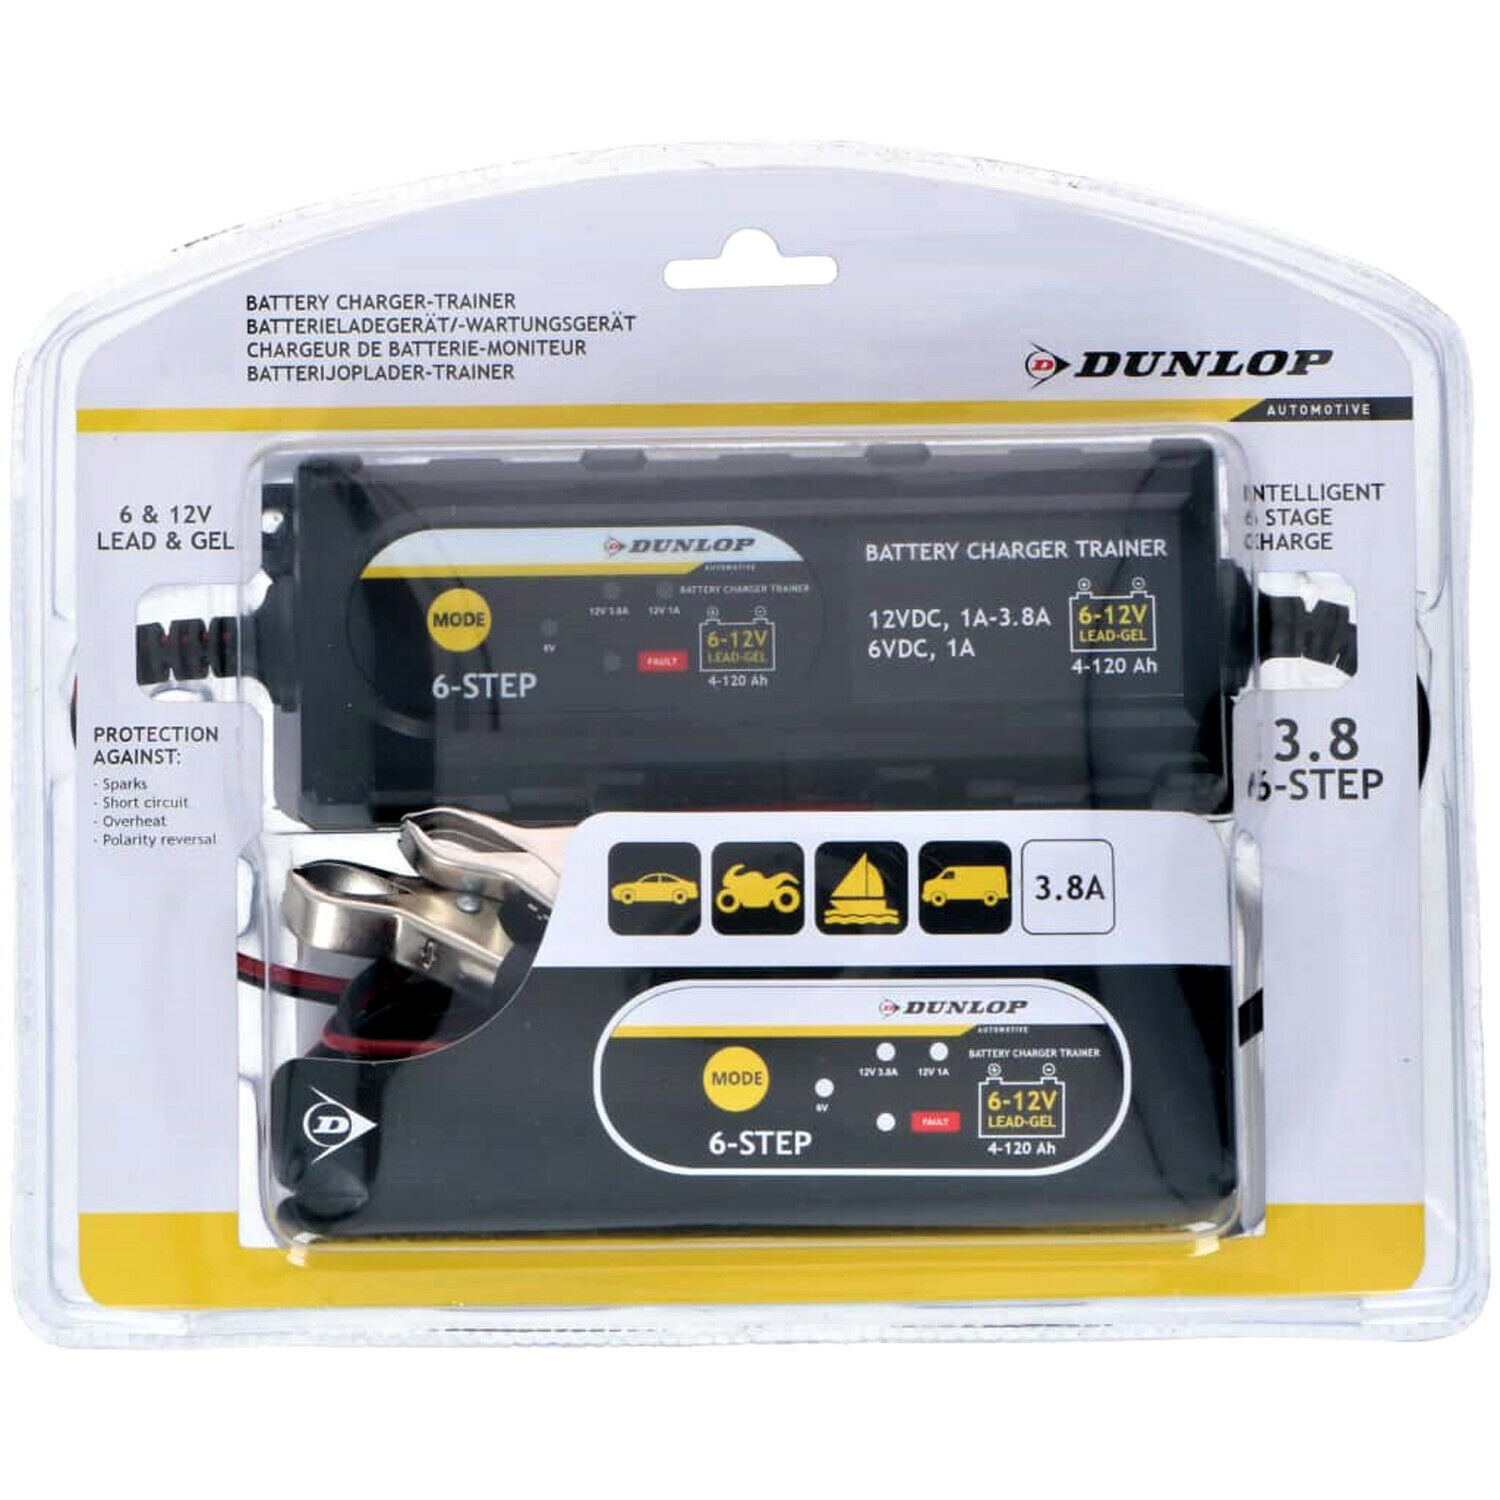 Аксесоари DUNLOP 15310 Умно зарядно за акумулатор Dunlop. 3.8А 6-12V